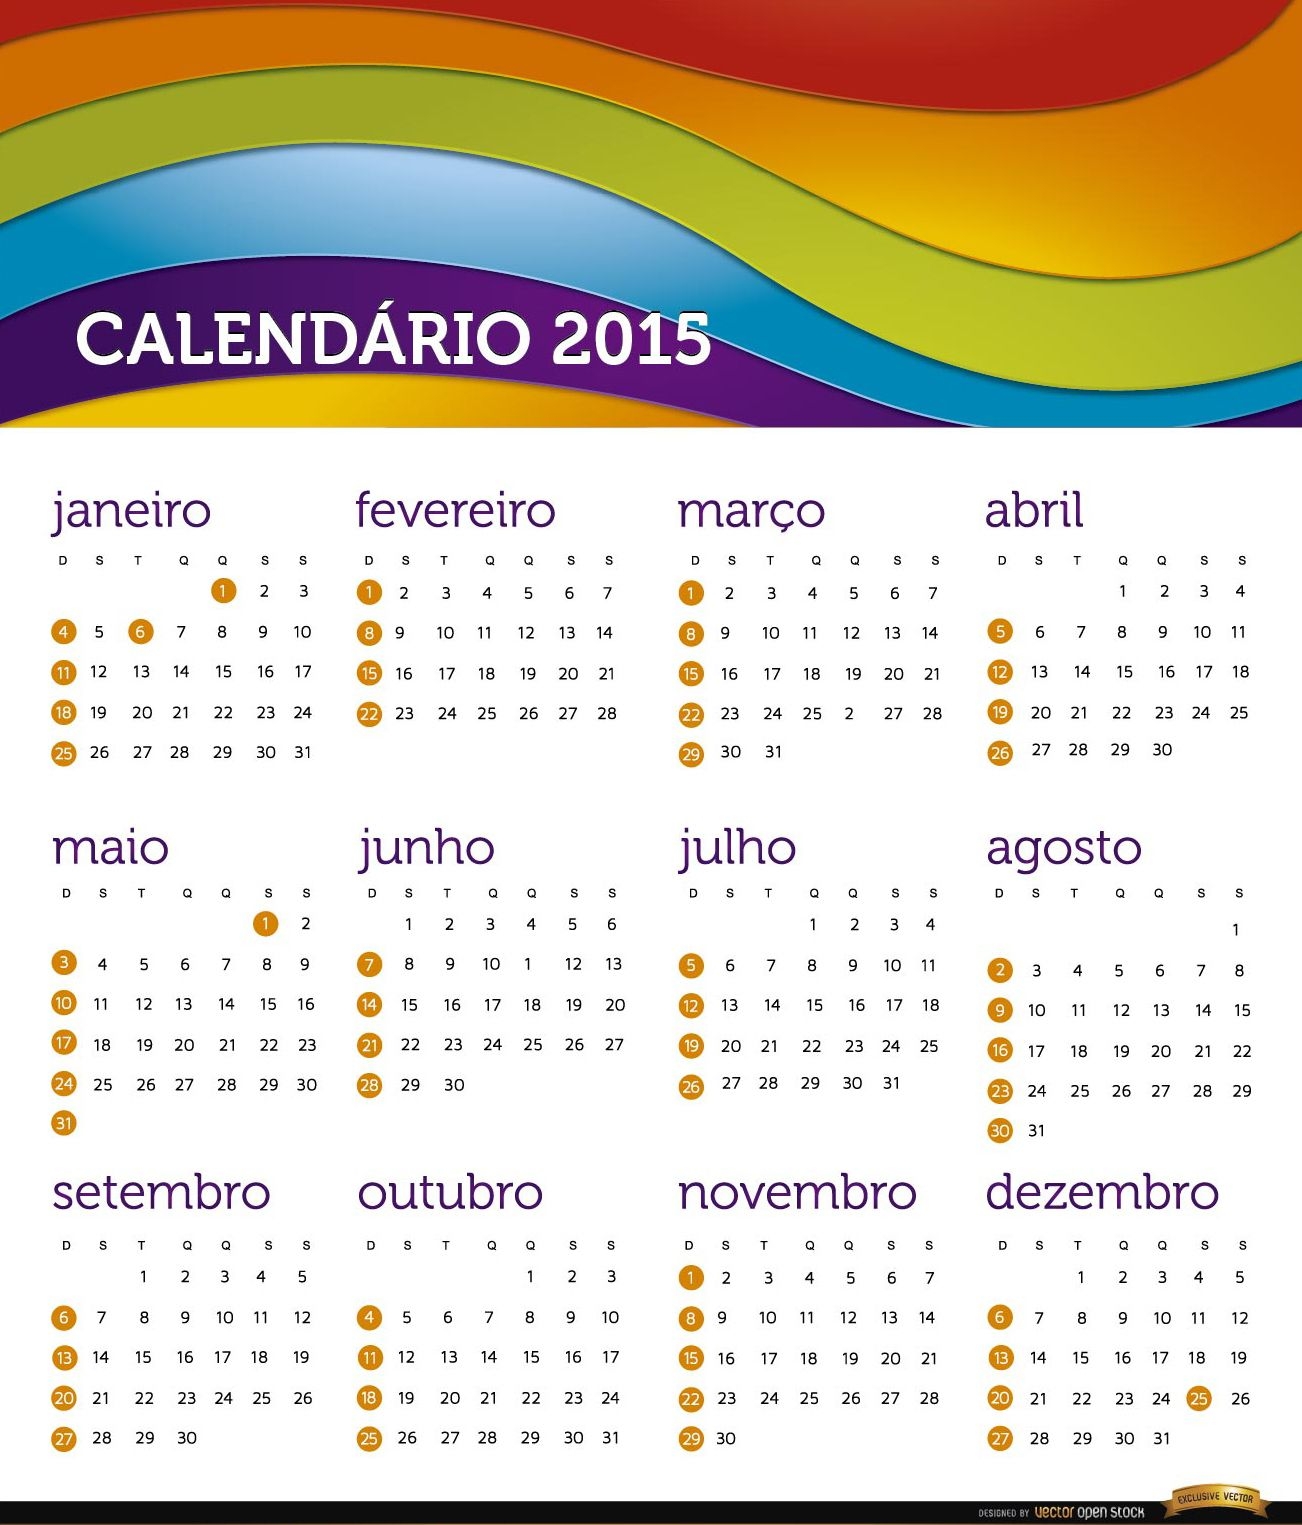 2015 calendario arcoiris portugu?s